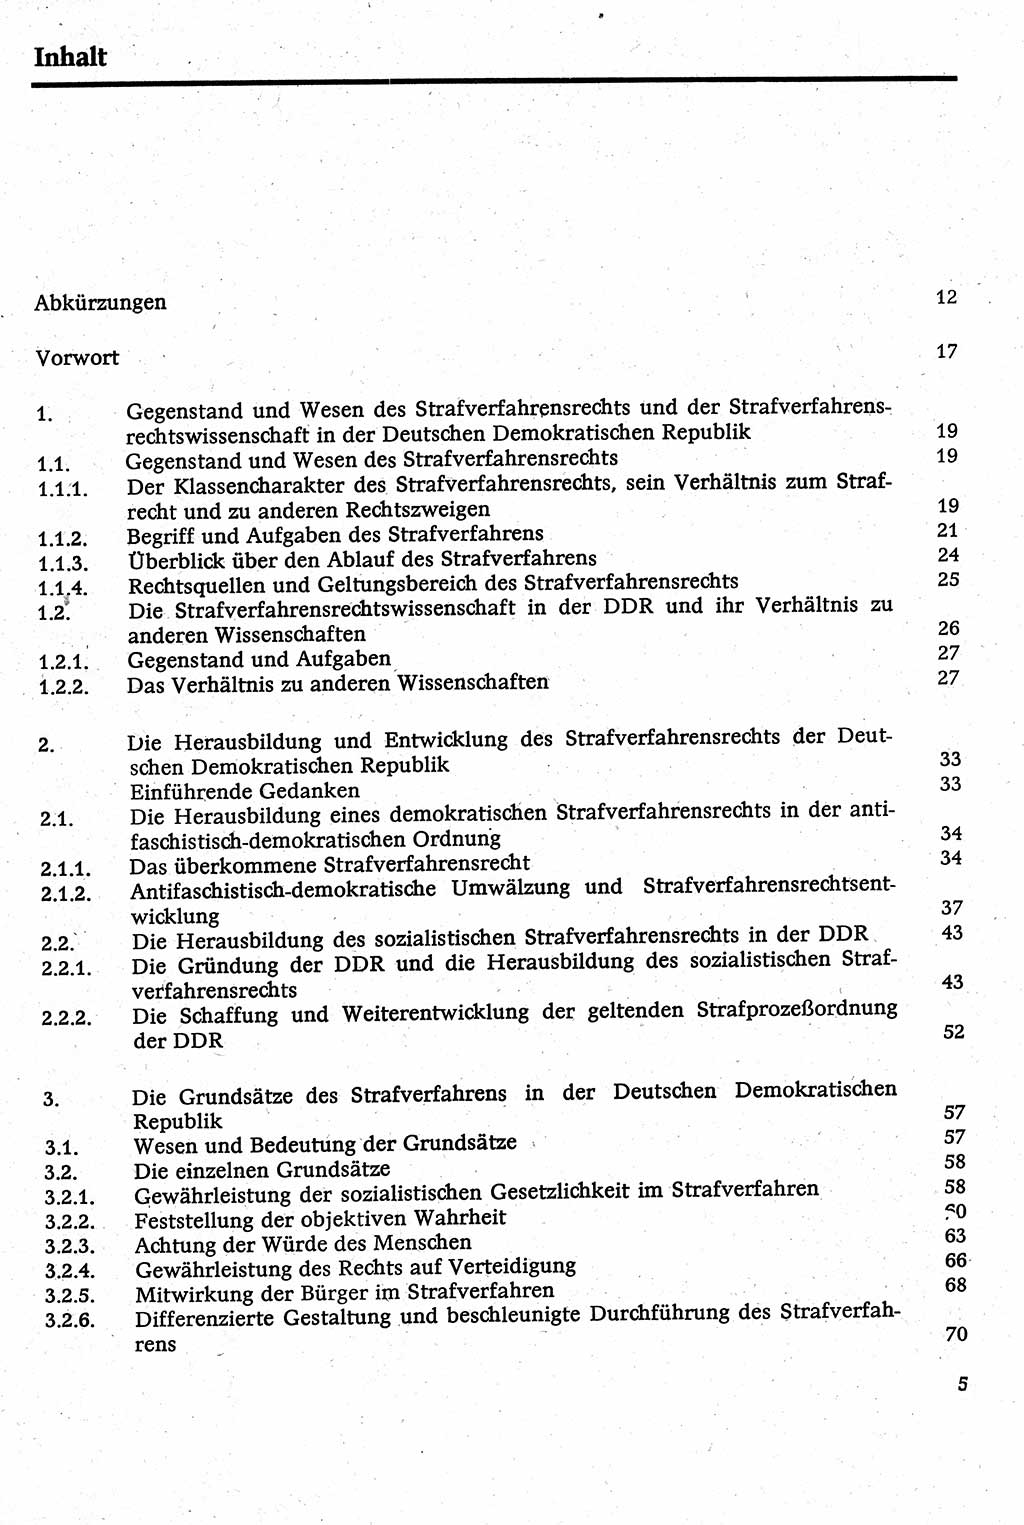 Strafverfahrensrecht [Deutsche Demokratische Republik (DDR)], Lehrbuch 1982, Seite 5 (Strafverf.-R. DDR Lb. 1982, S. 5)